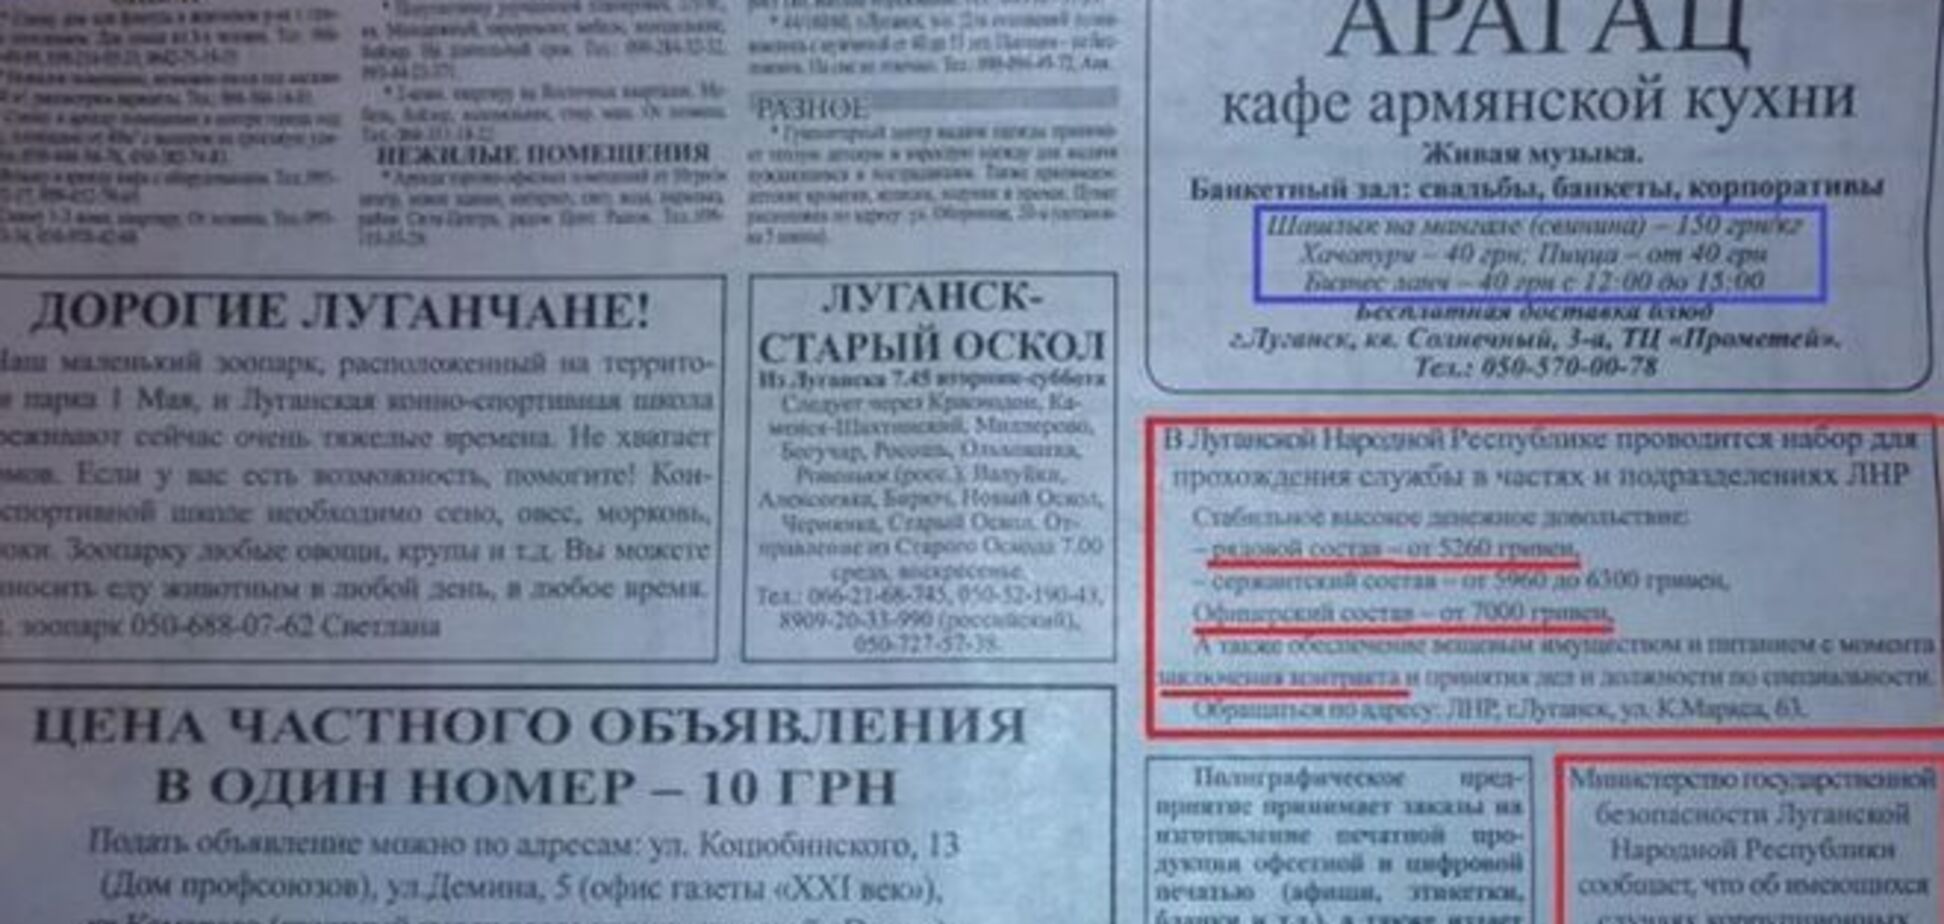 За покликом серця: найманців в банди 'ЛНР' набирають через газету, обіцяючи до 7 тис грн